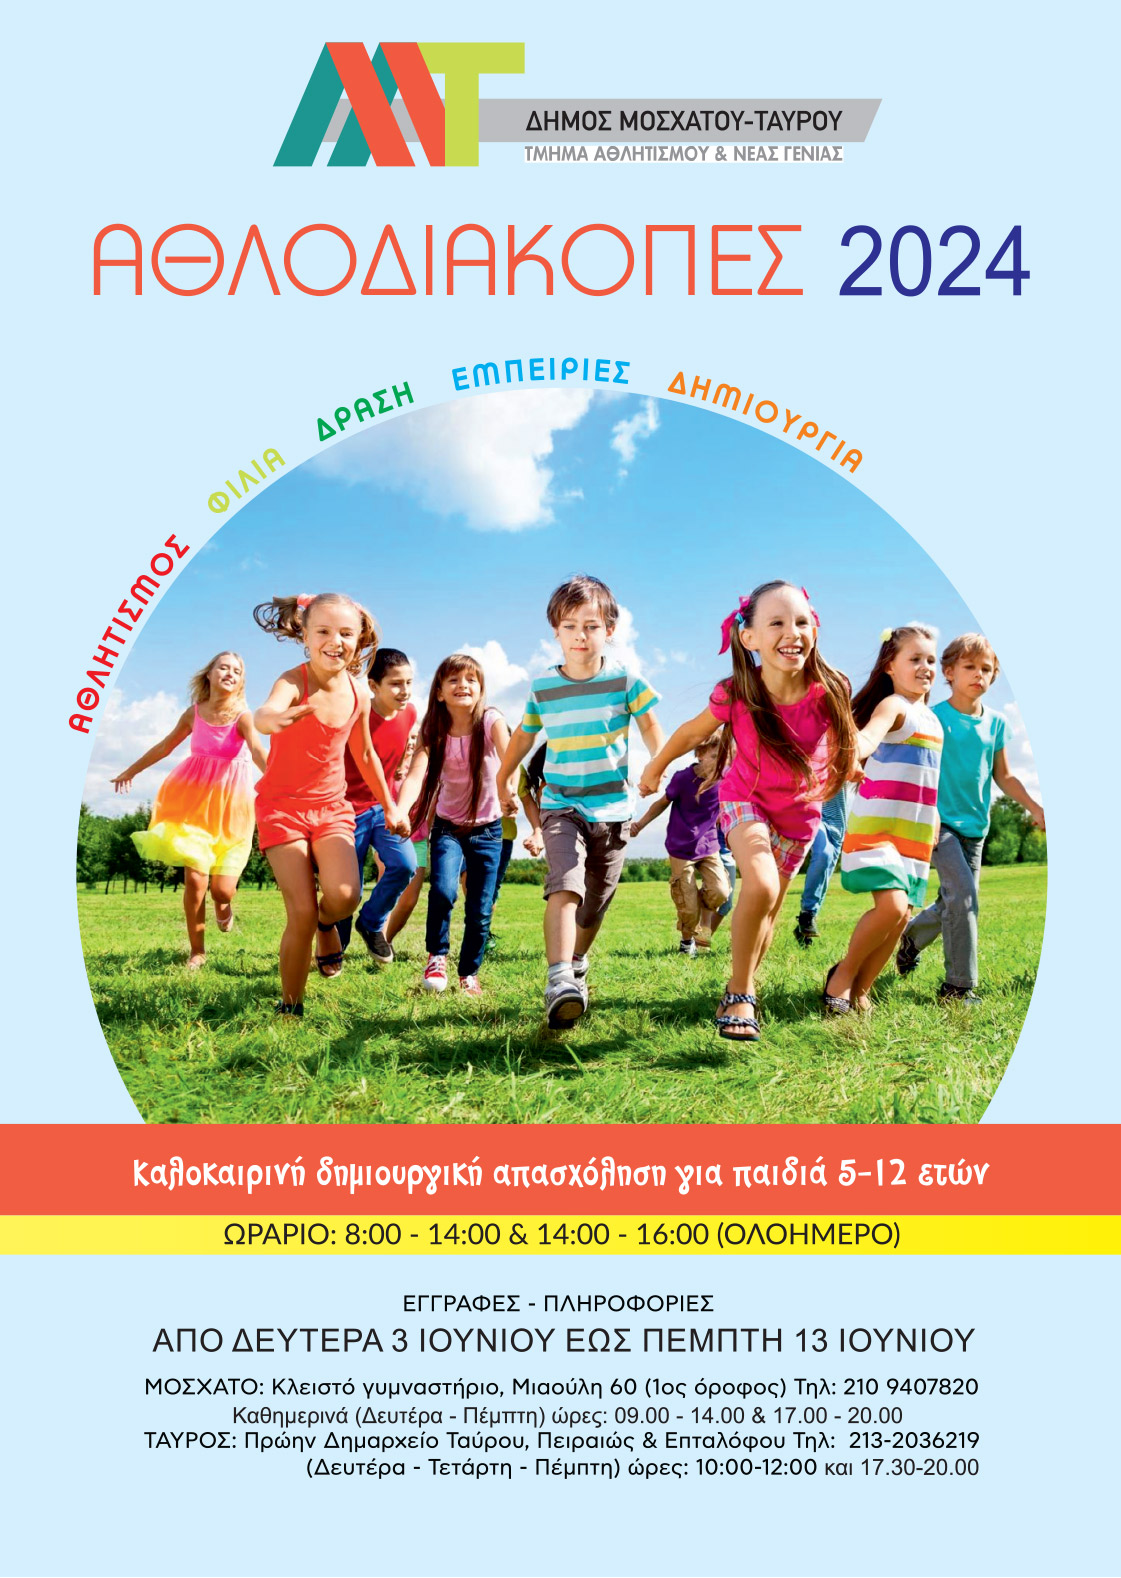 «Αθλοδιακοπές 2024» στο Δήμο Μοσχάτου-Ταύρου